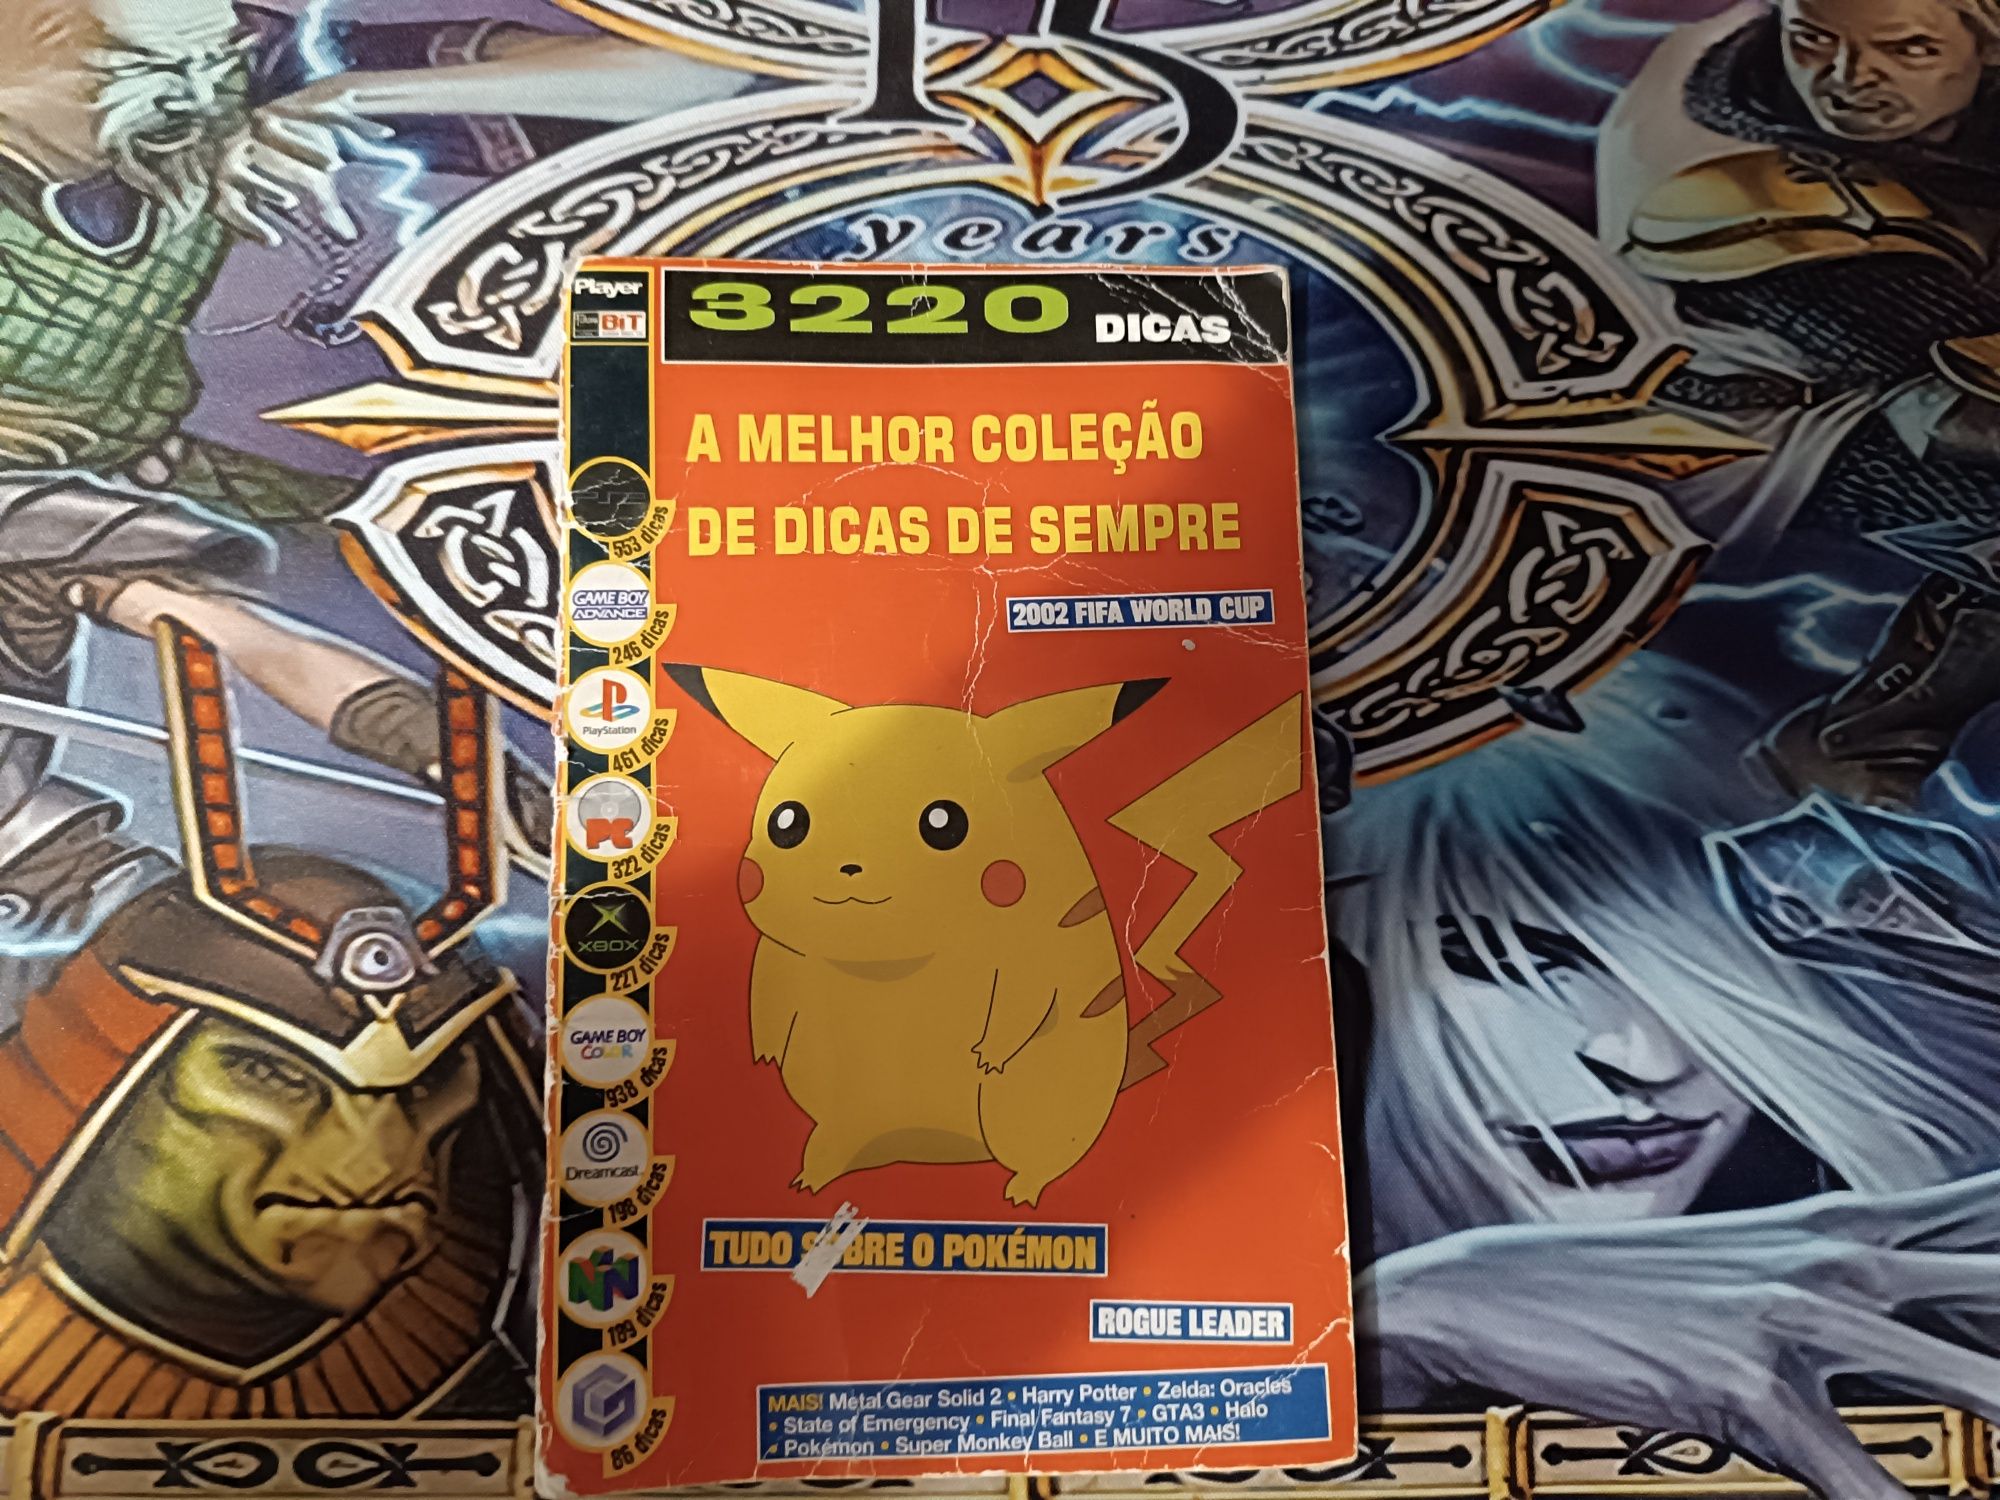 Revista 3220 Dicas - Games especial Pokémon